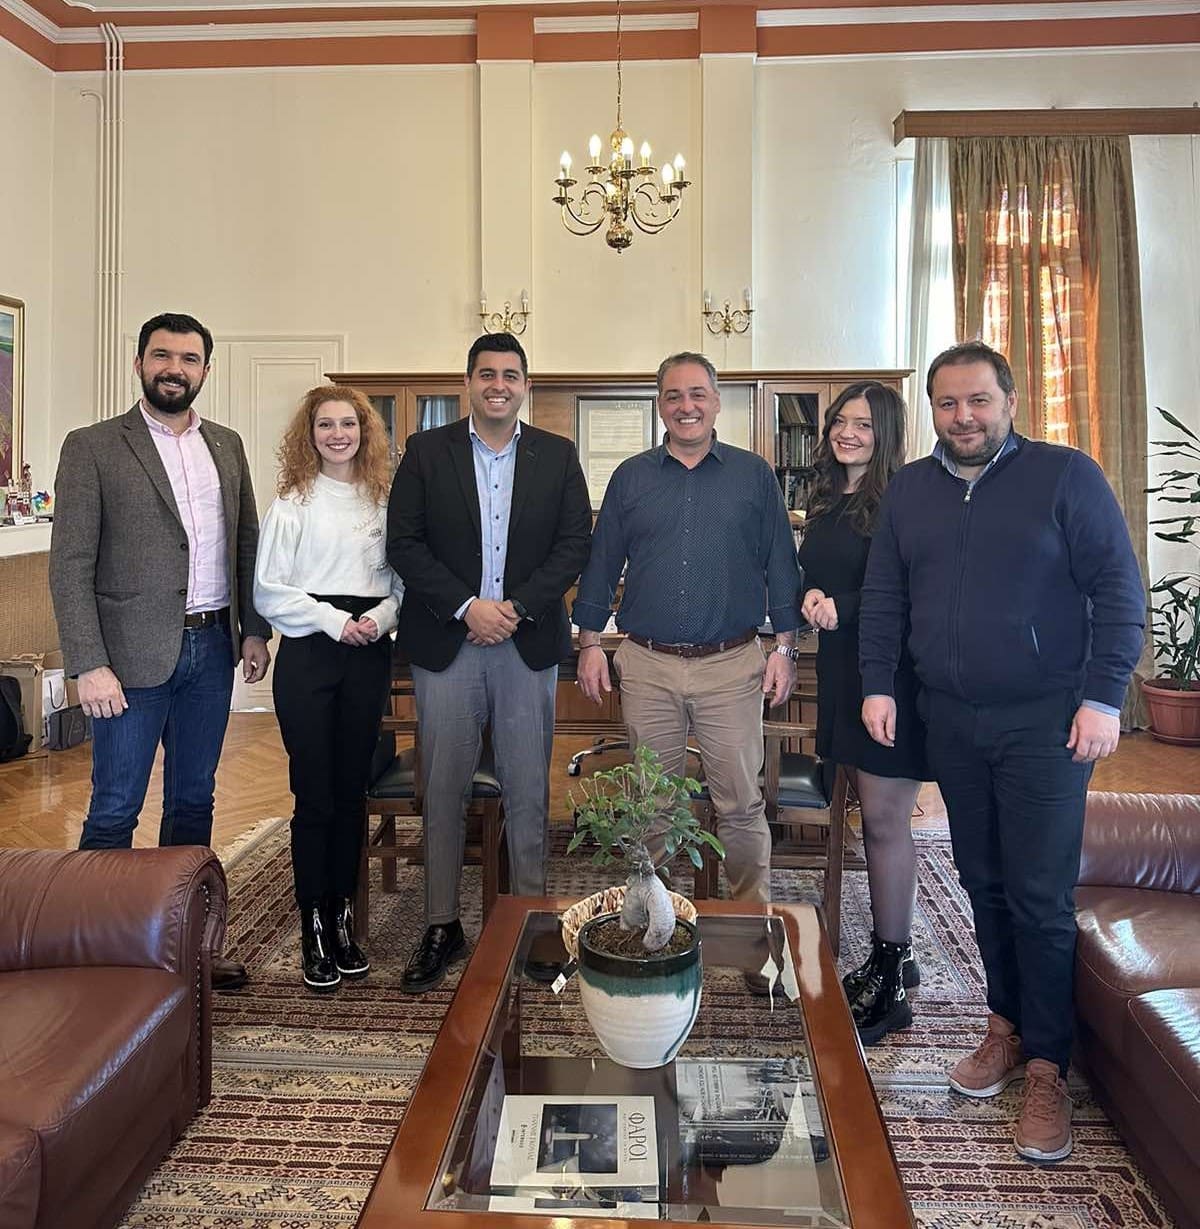 Συνάντηση του Δημάρχου Κοζάνης Γιάννη Κοκκαλιάρη με στελέχη του Ομίλου Ενεργών Νέων Δυτικής Μακεδονίας - Europe Direct Δυτικής Μακεδονίας